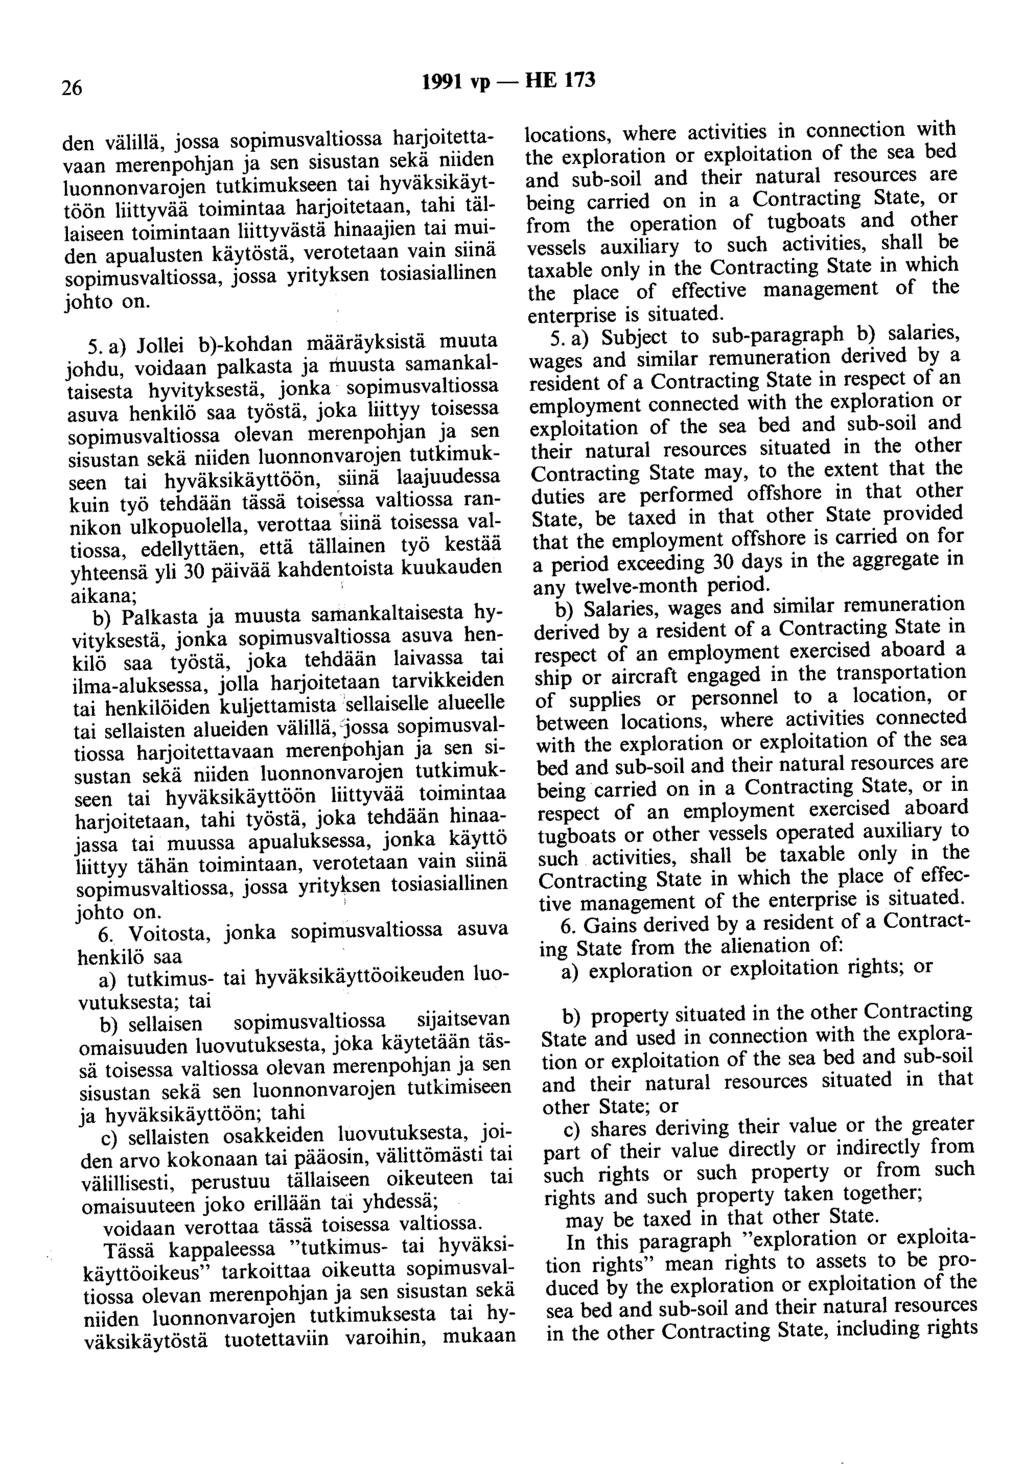 26 1991 vp- HE 173 den välillä, jossa sopimusvaltiossa harjoitettavaan merenpohjan ja sen sisustan sekä niiden luonnonvarojen tutkimukseen tai hyväksikäyttöön liittyvää toimintaa harjoitetaan, tahi